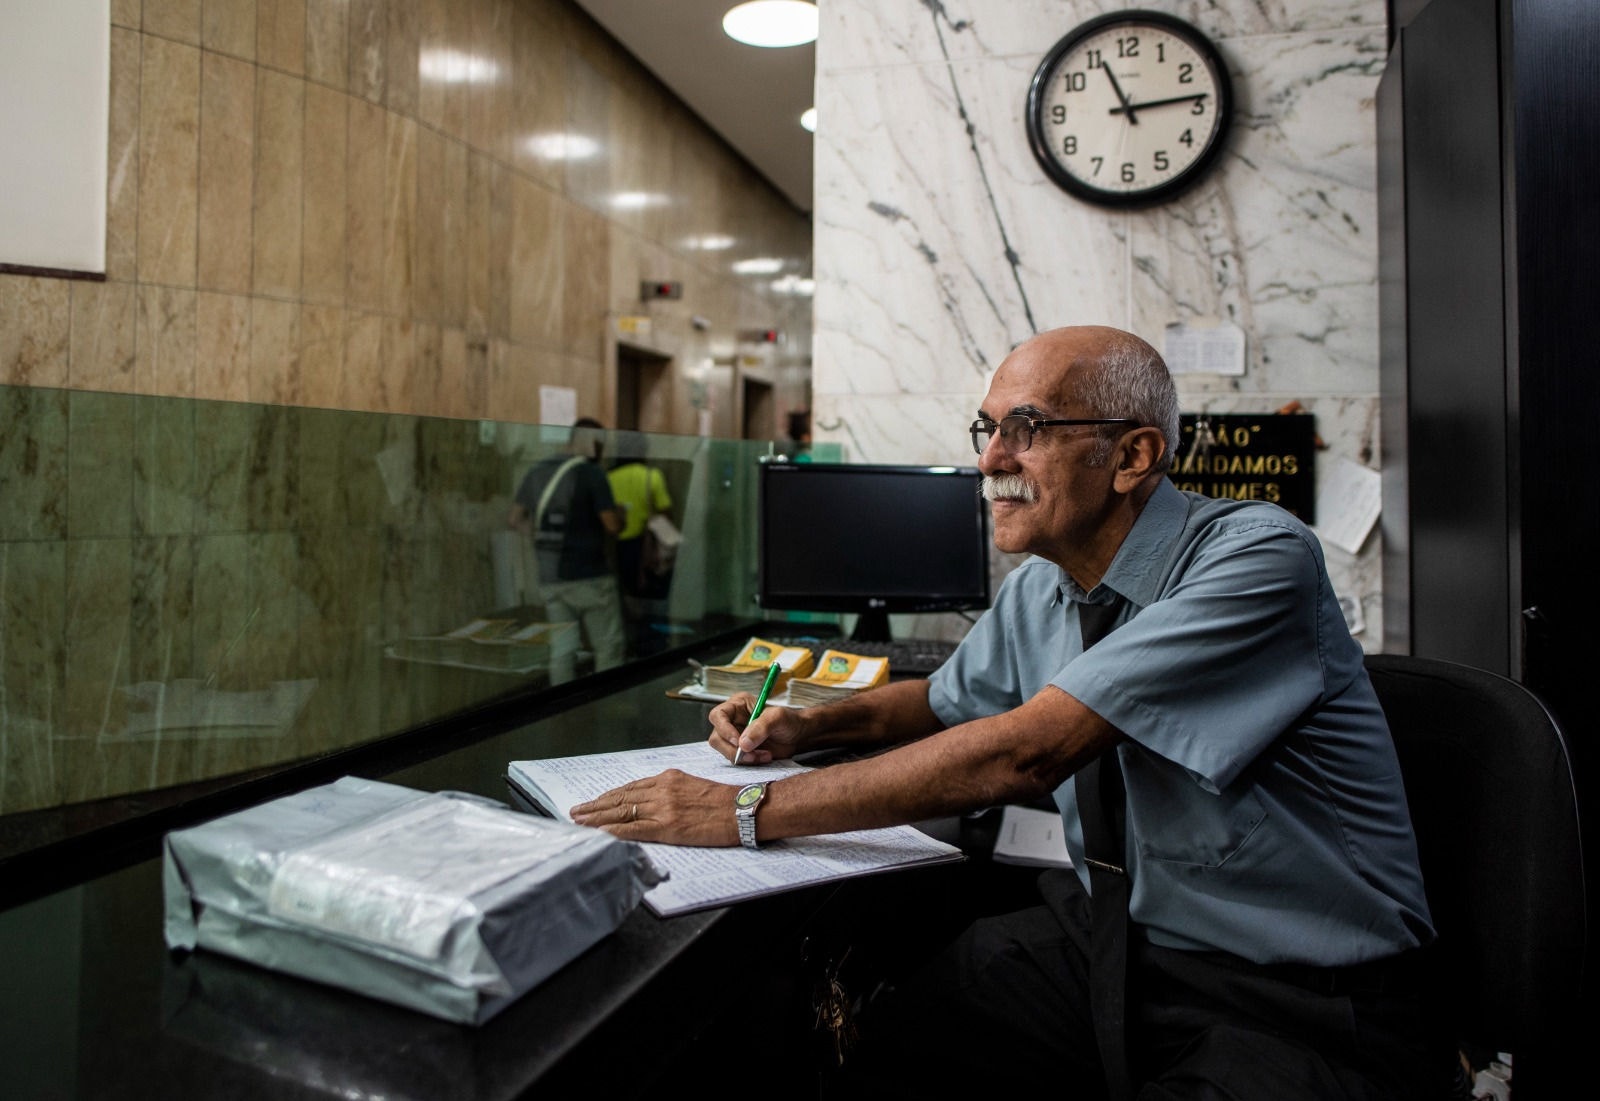 Porteiro de prédio por onde passam 1.500 pessoas por dia, Wilson, 67, diz que ama a profissão